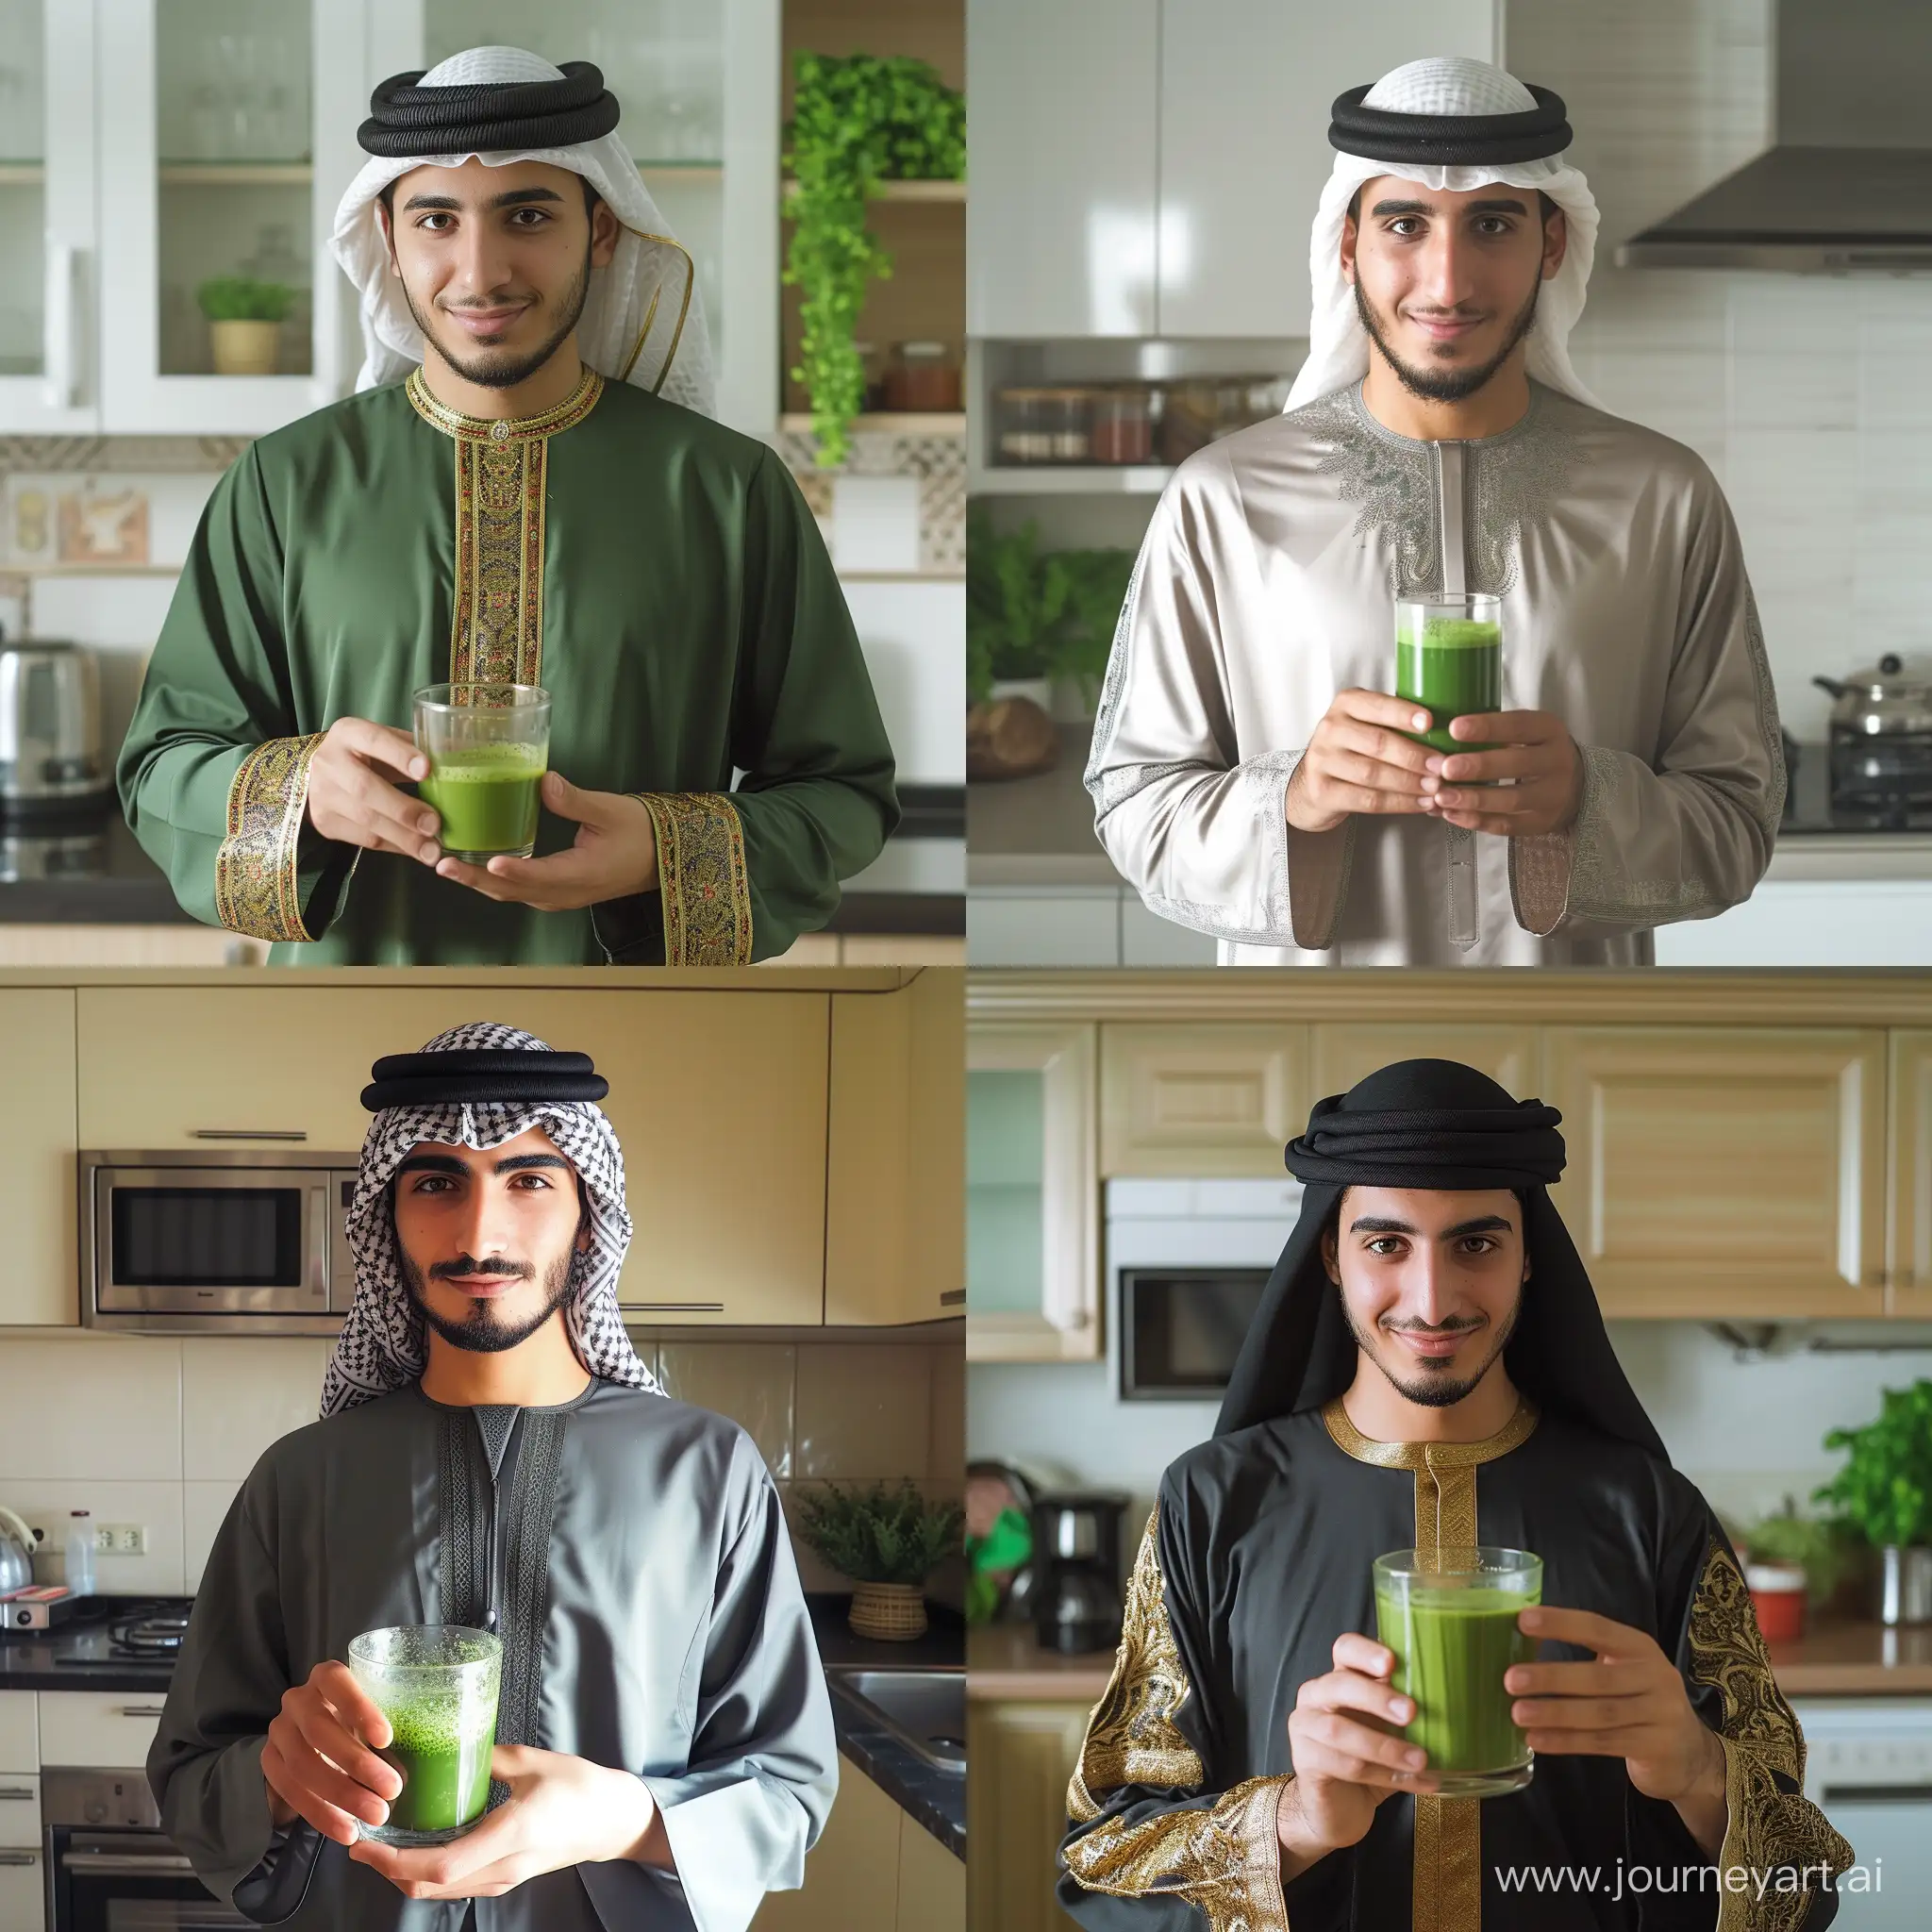 Arabic-Man-Enjoying-Clear-Green-Matcha-Tea-in-Kitchen-Ambiance